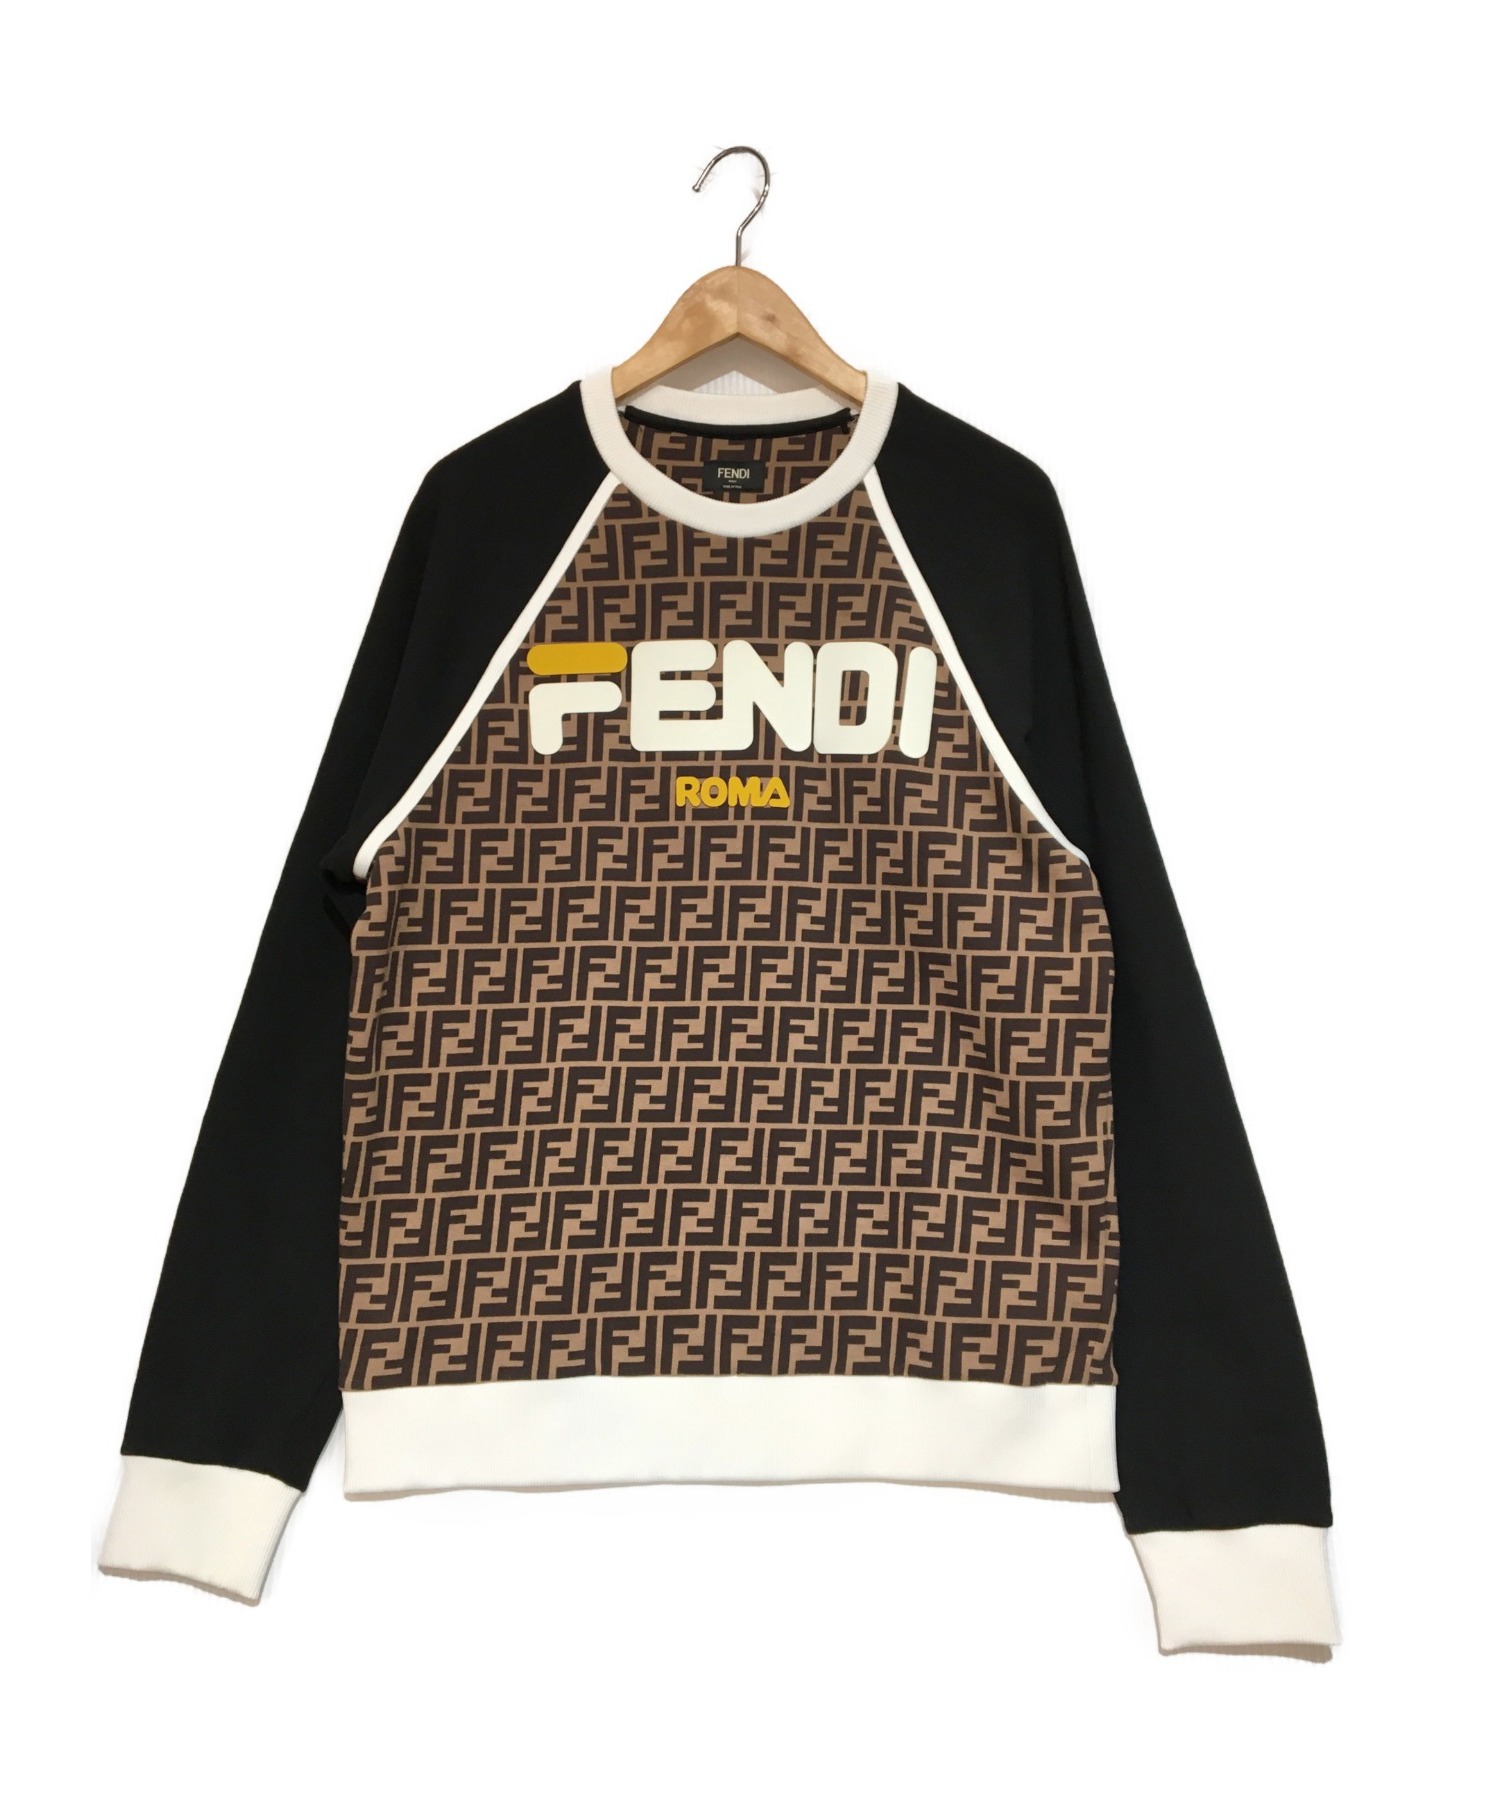 FENDI (フェンディ) Crewneck Sweatshirt フェンディマニアロゴ スウェット ブラウン サイズ:M